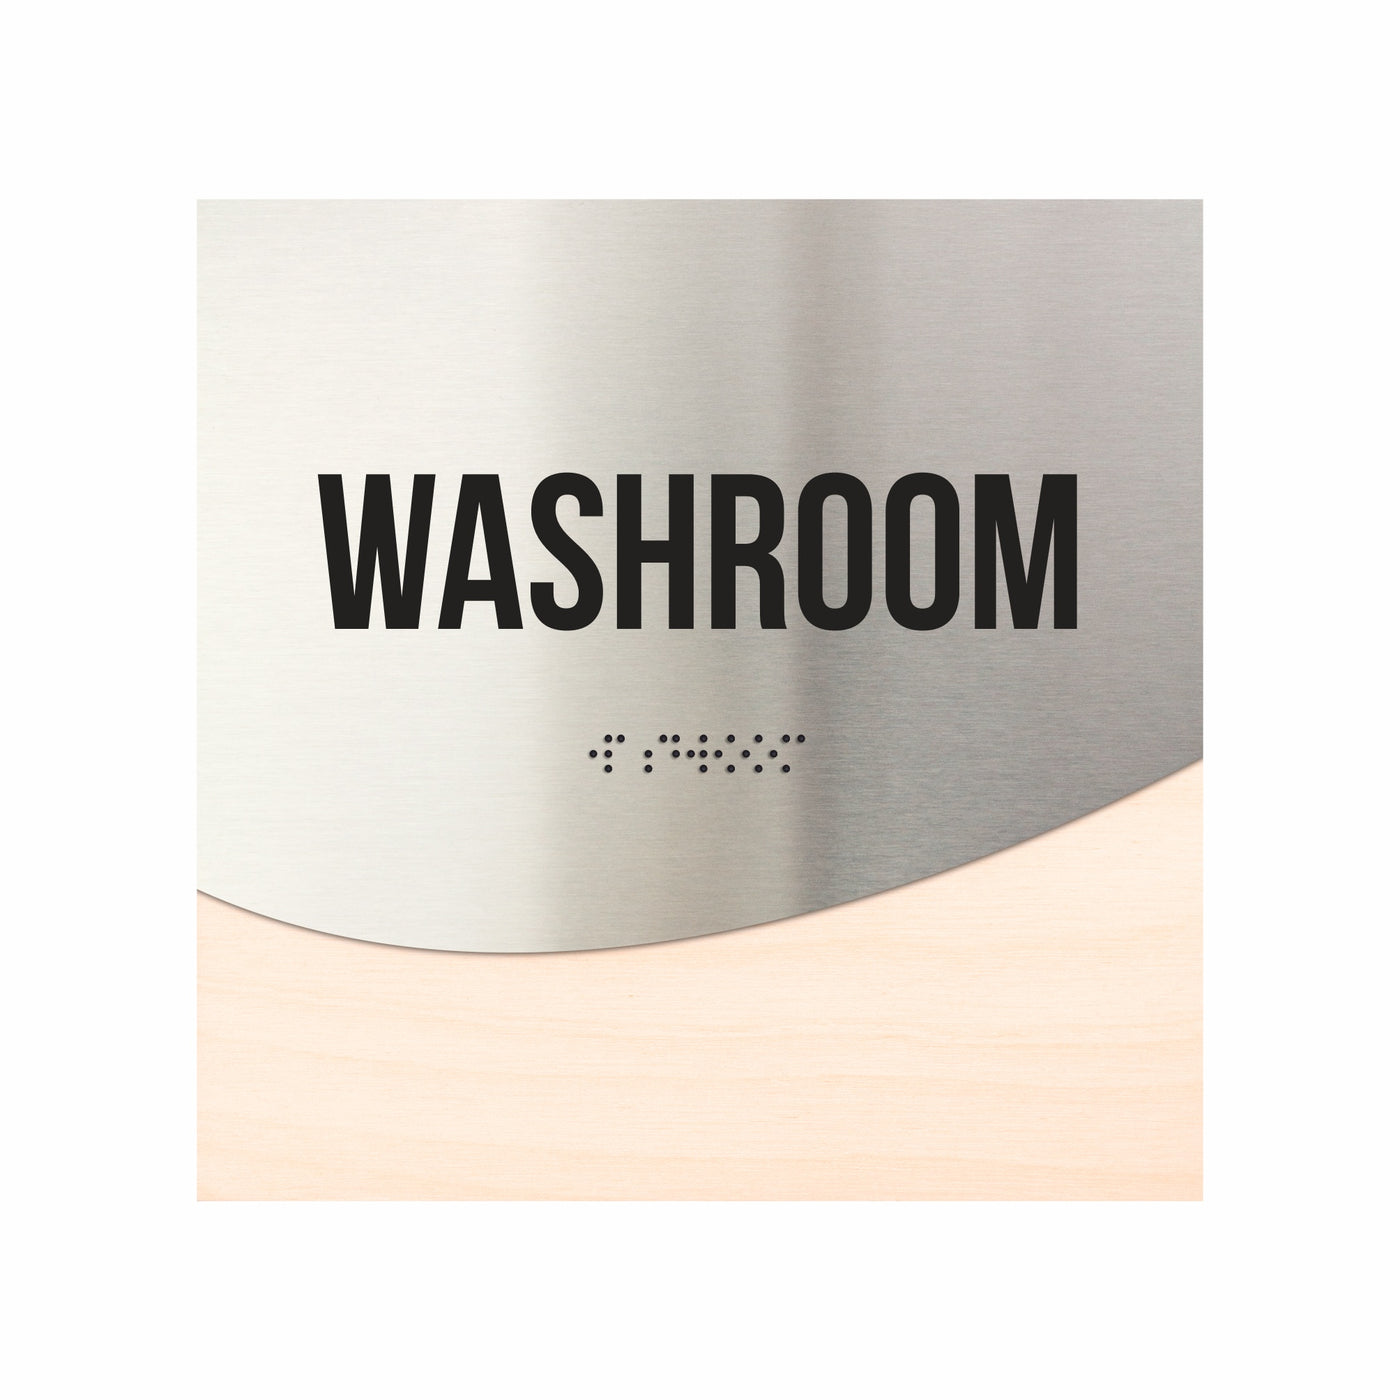 Washroom Door Sign - Stainless Steel & Wood Door Plate "Jure" Design